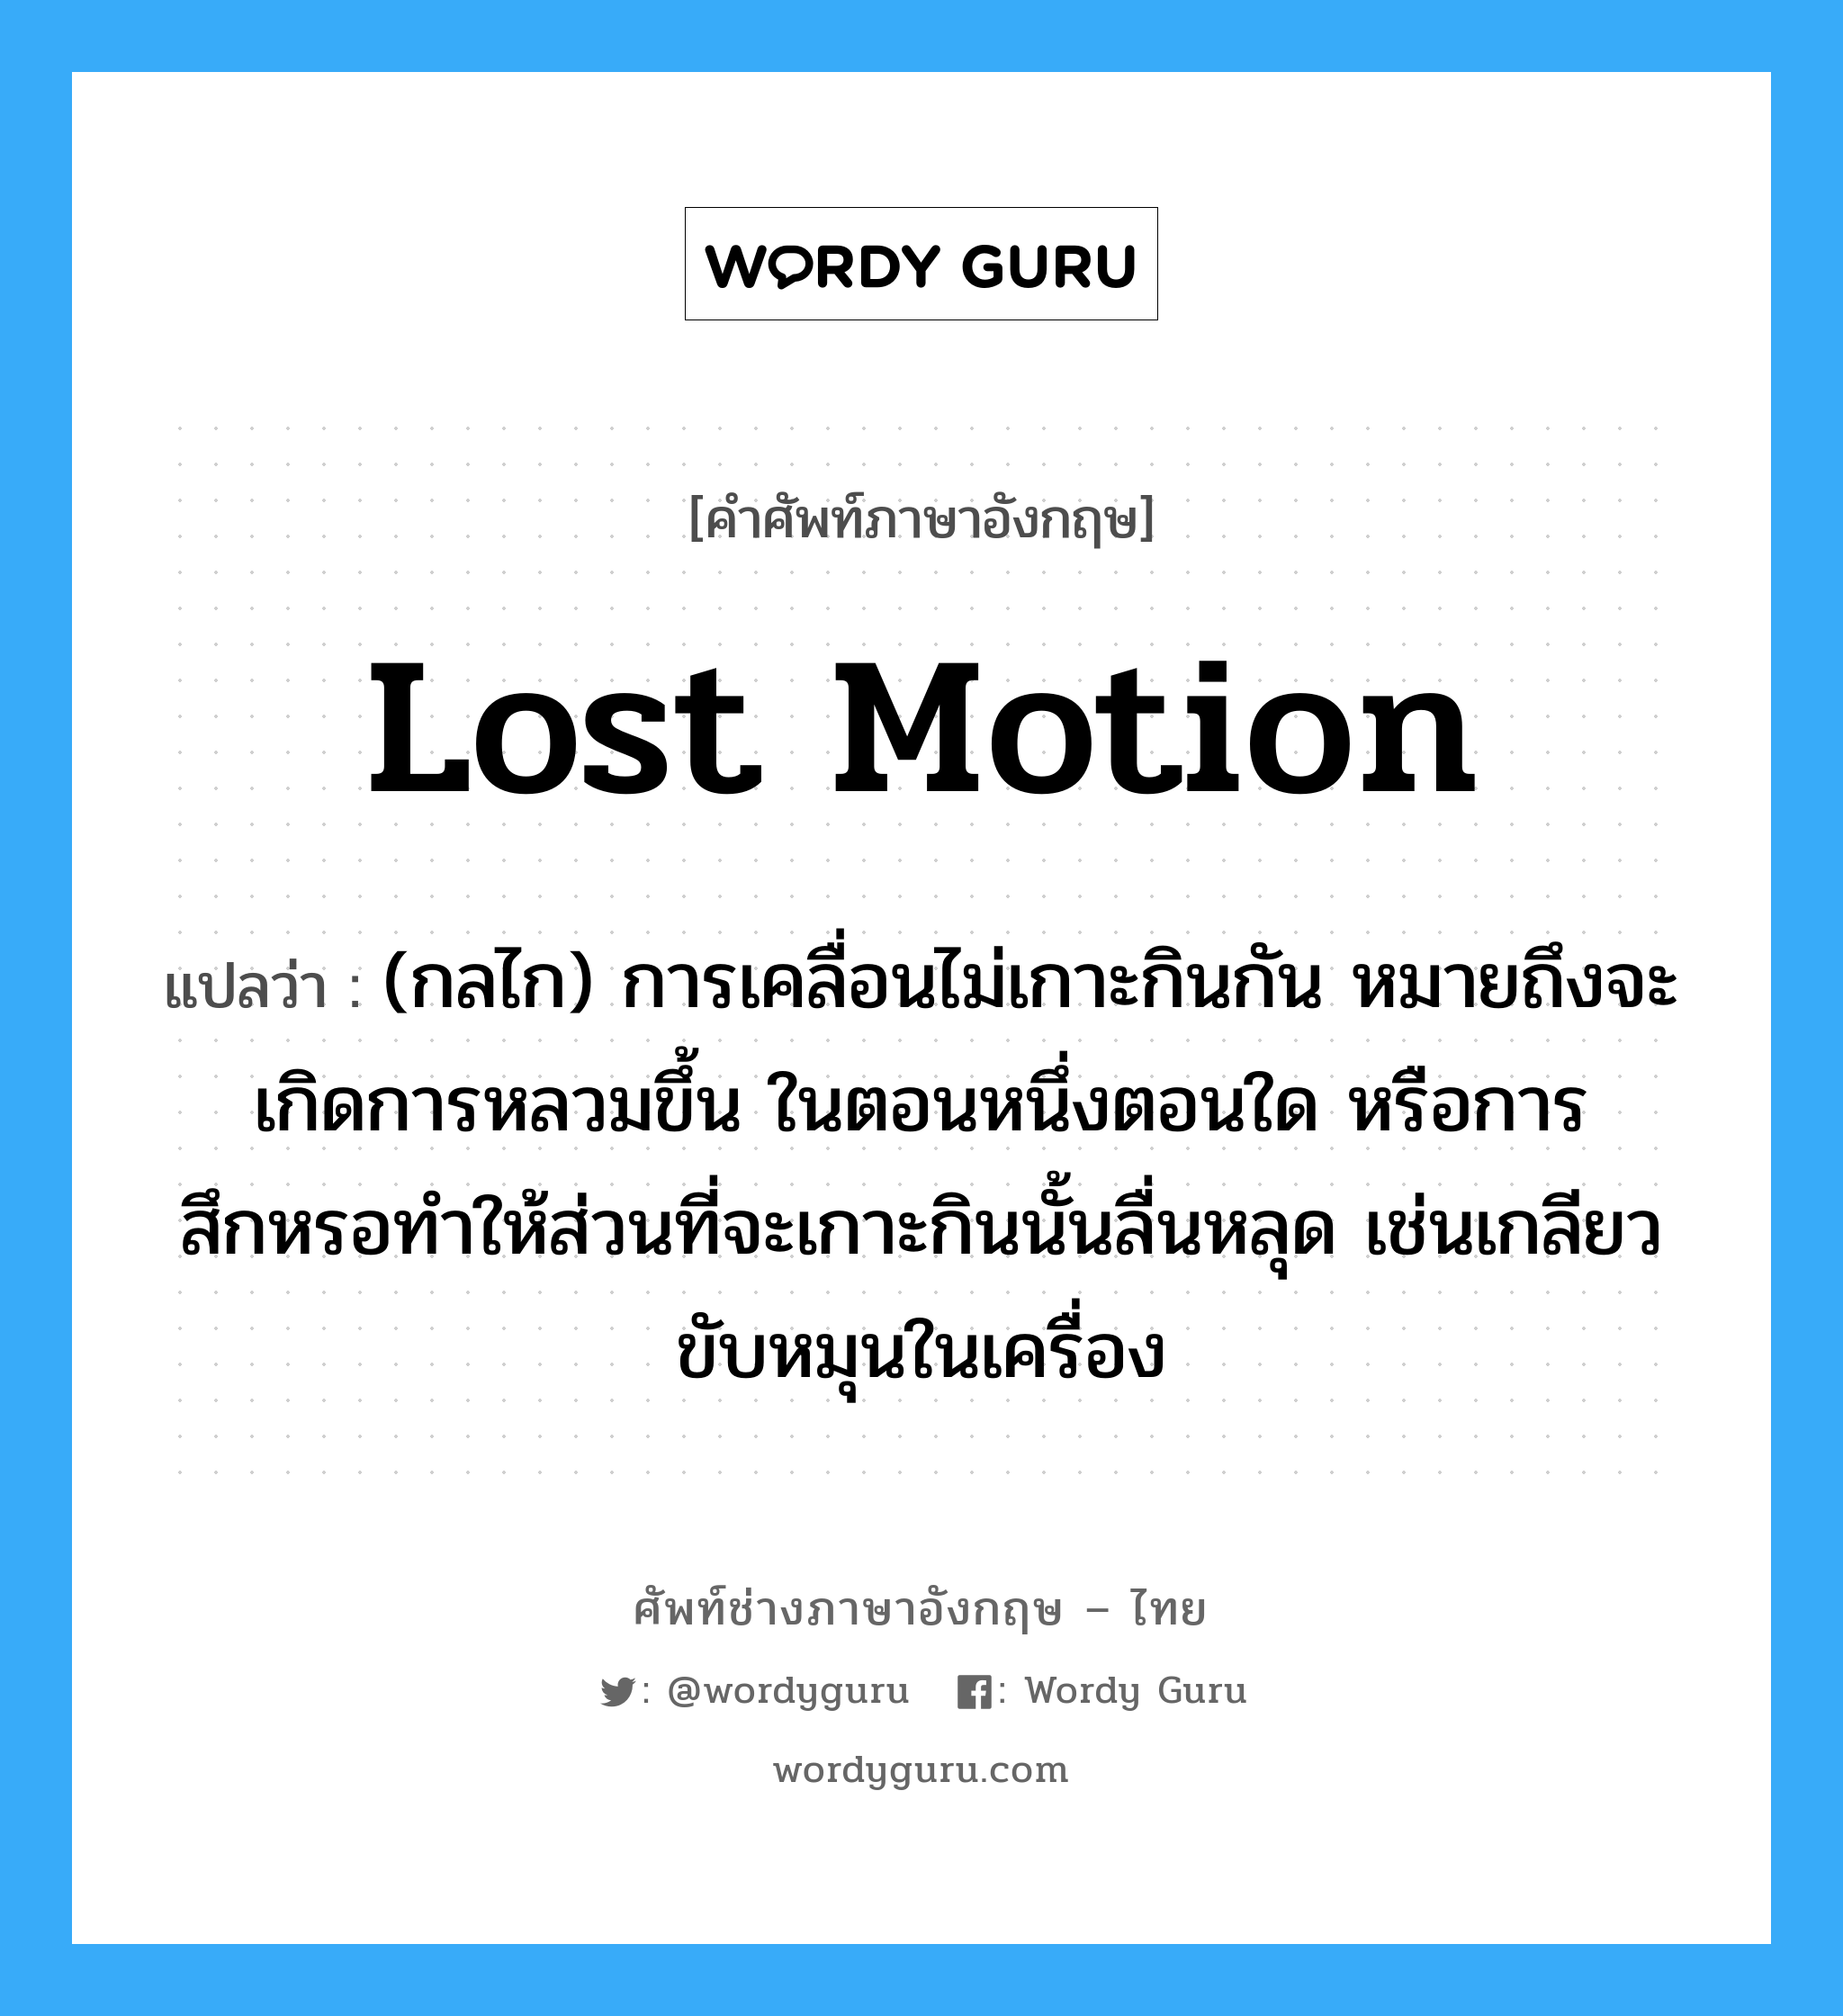 lost motion แปลว่า?, คำศัพท์ช่างภาษาอังกฤษ - ไทย lost motion คำศัพท์ภาษาอังกฤษ lost motion แปลว่า (กลไก) การเคลื่อนไม่เกาะกินกัน หมายถึงจะเกิดการหลวมขึ้น ในตอนหนึ่งตอนใด หรือการสึกหรอทำให้ส่วนที่จะเกาะกินนั้นลื่นหลุด เช่นเกลียวขับหมุนในเครื่อง